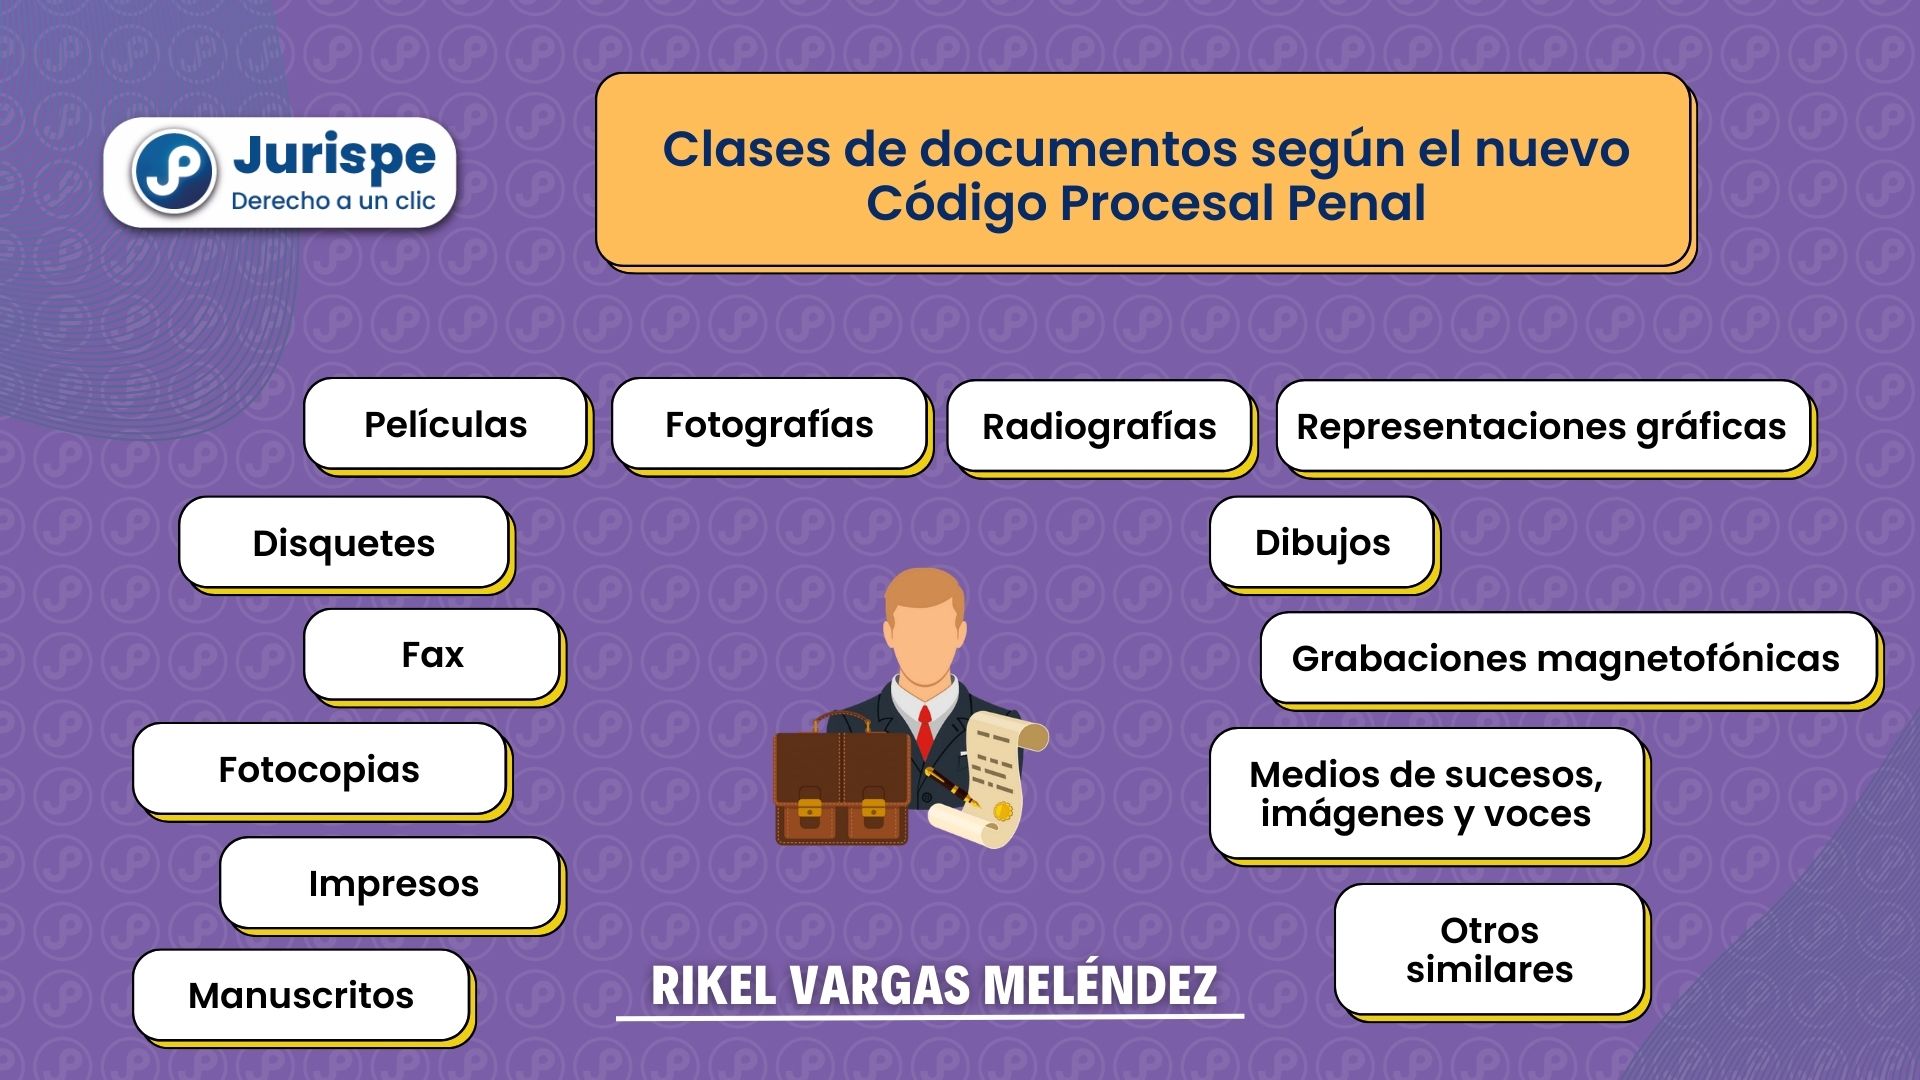 Clases de documentos según el nuevo Código Procesal Penal. Bien explicado